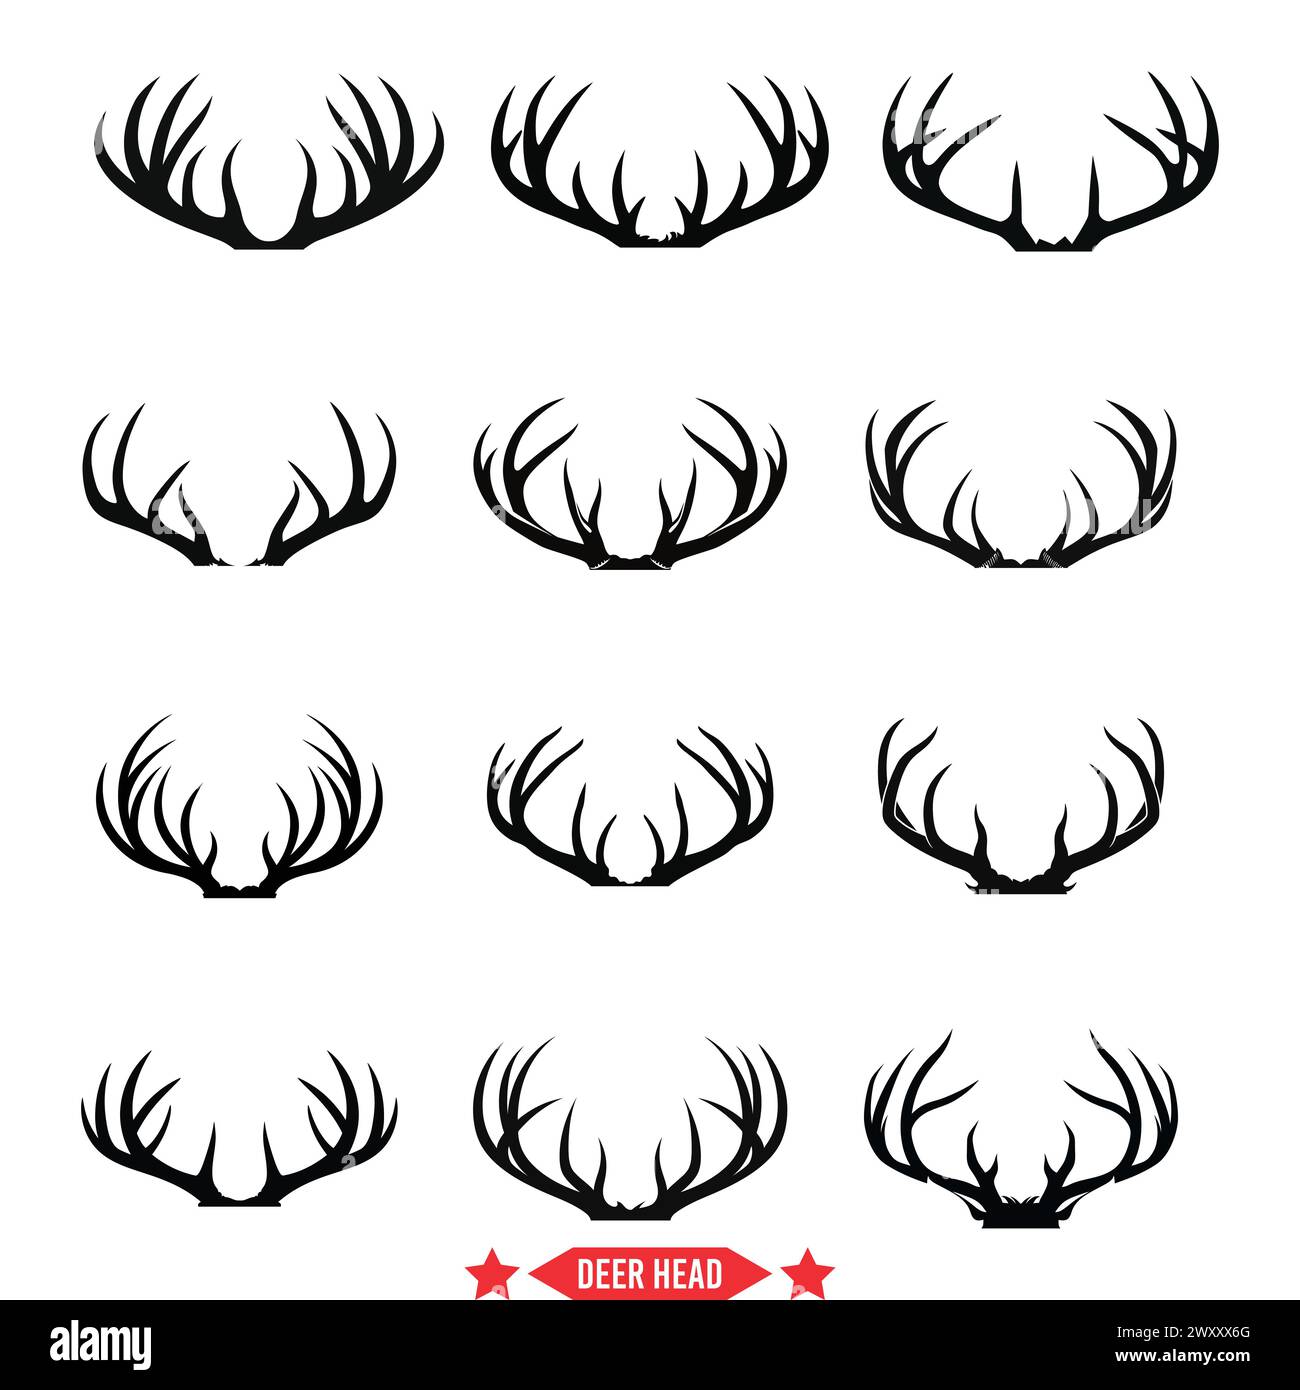 Regale Deer Head Sketches prächtige Silhouetten, ideal für Branding und Dekor Stock Vektor